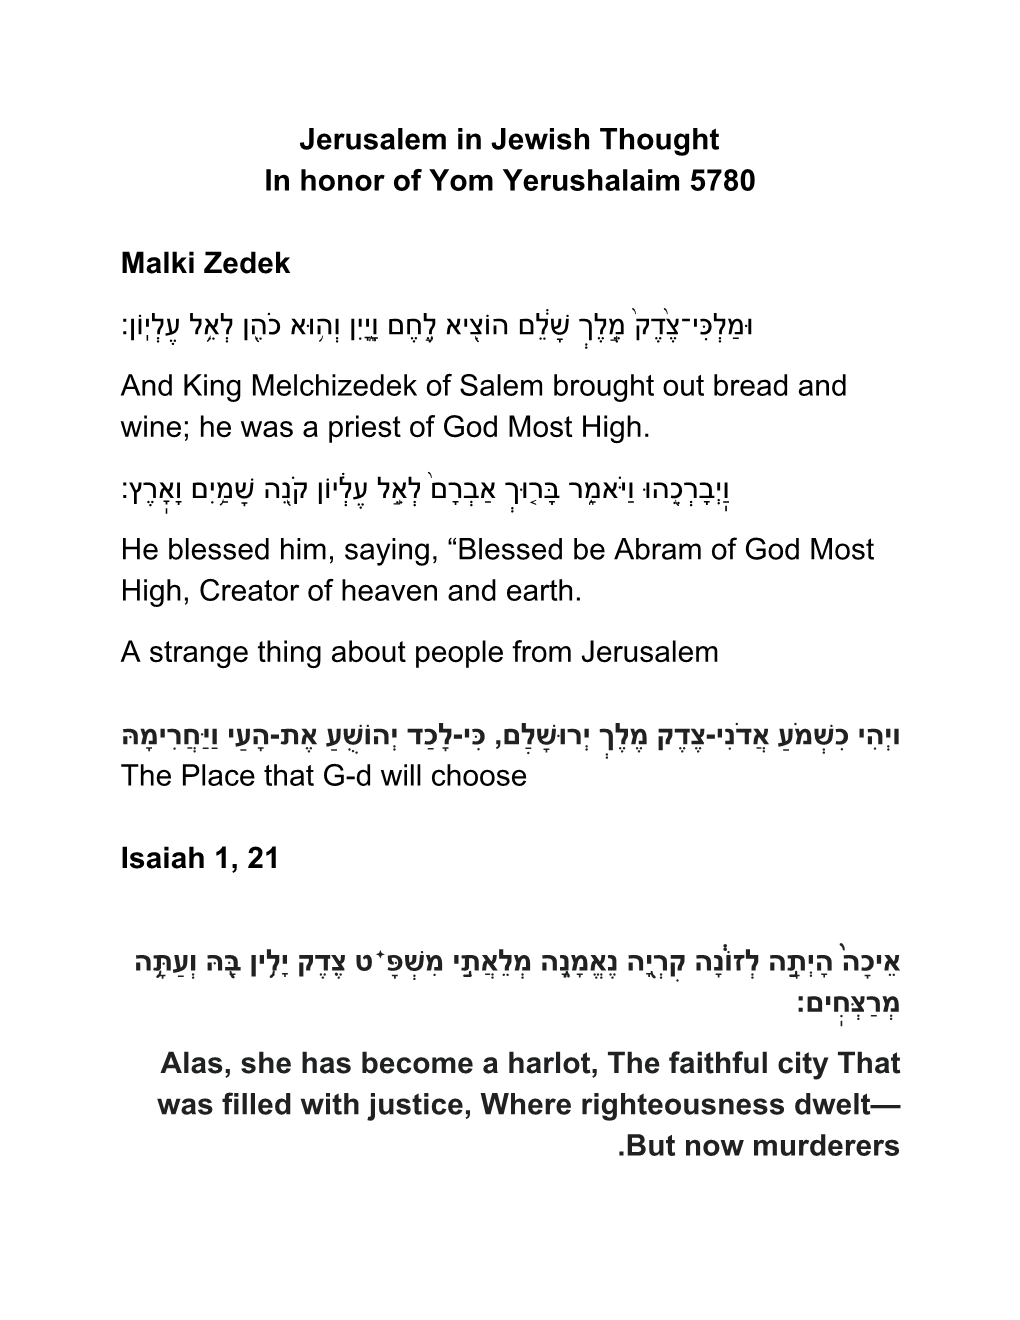 Jerusalem in Jewish Thought in Honor of Yom Yerushalaim 5780 Malki